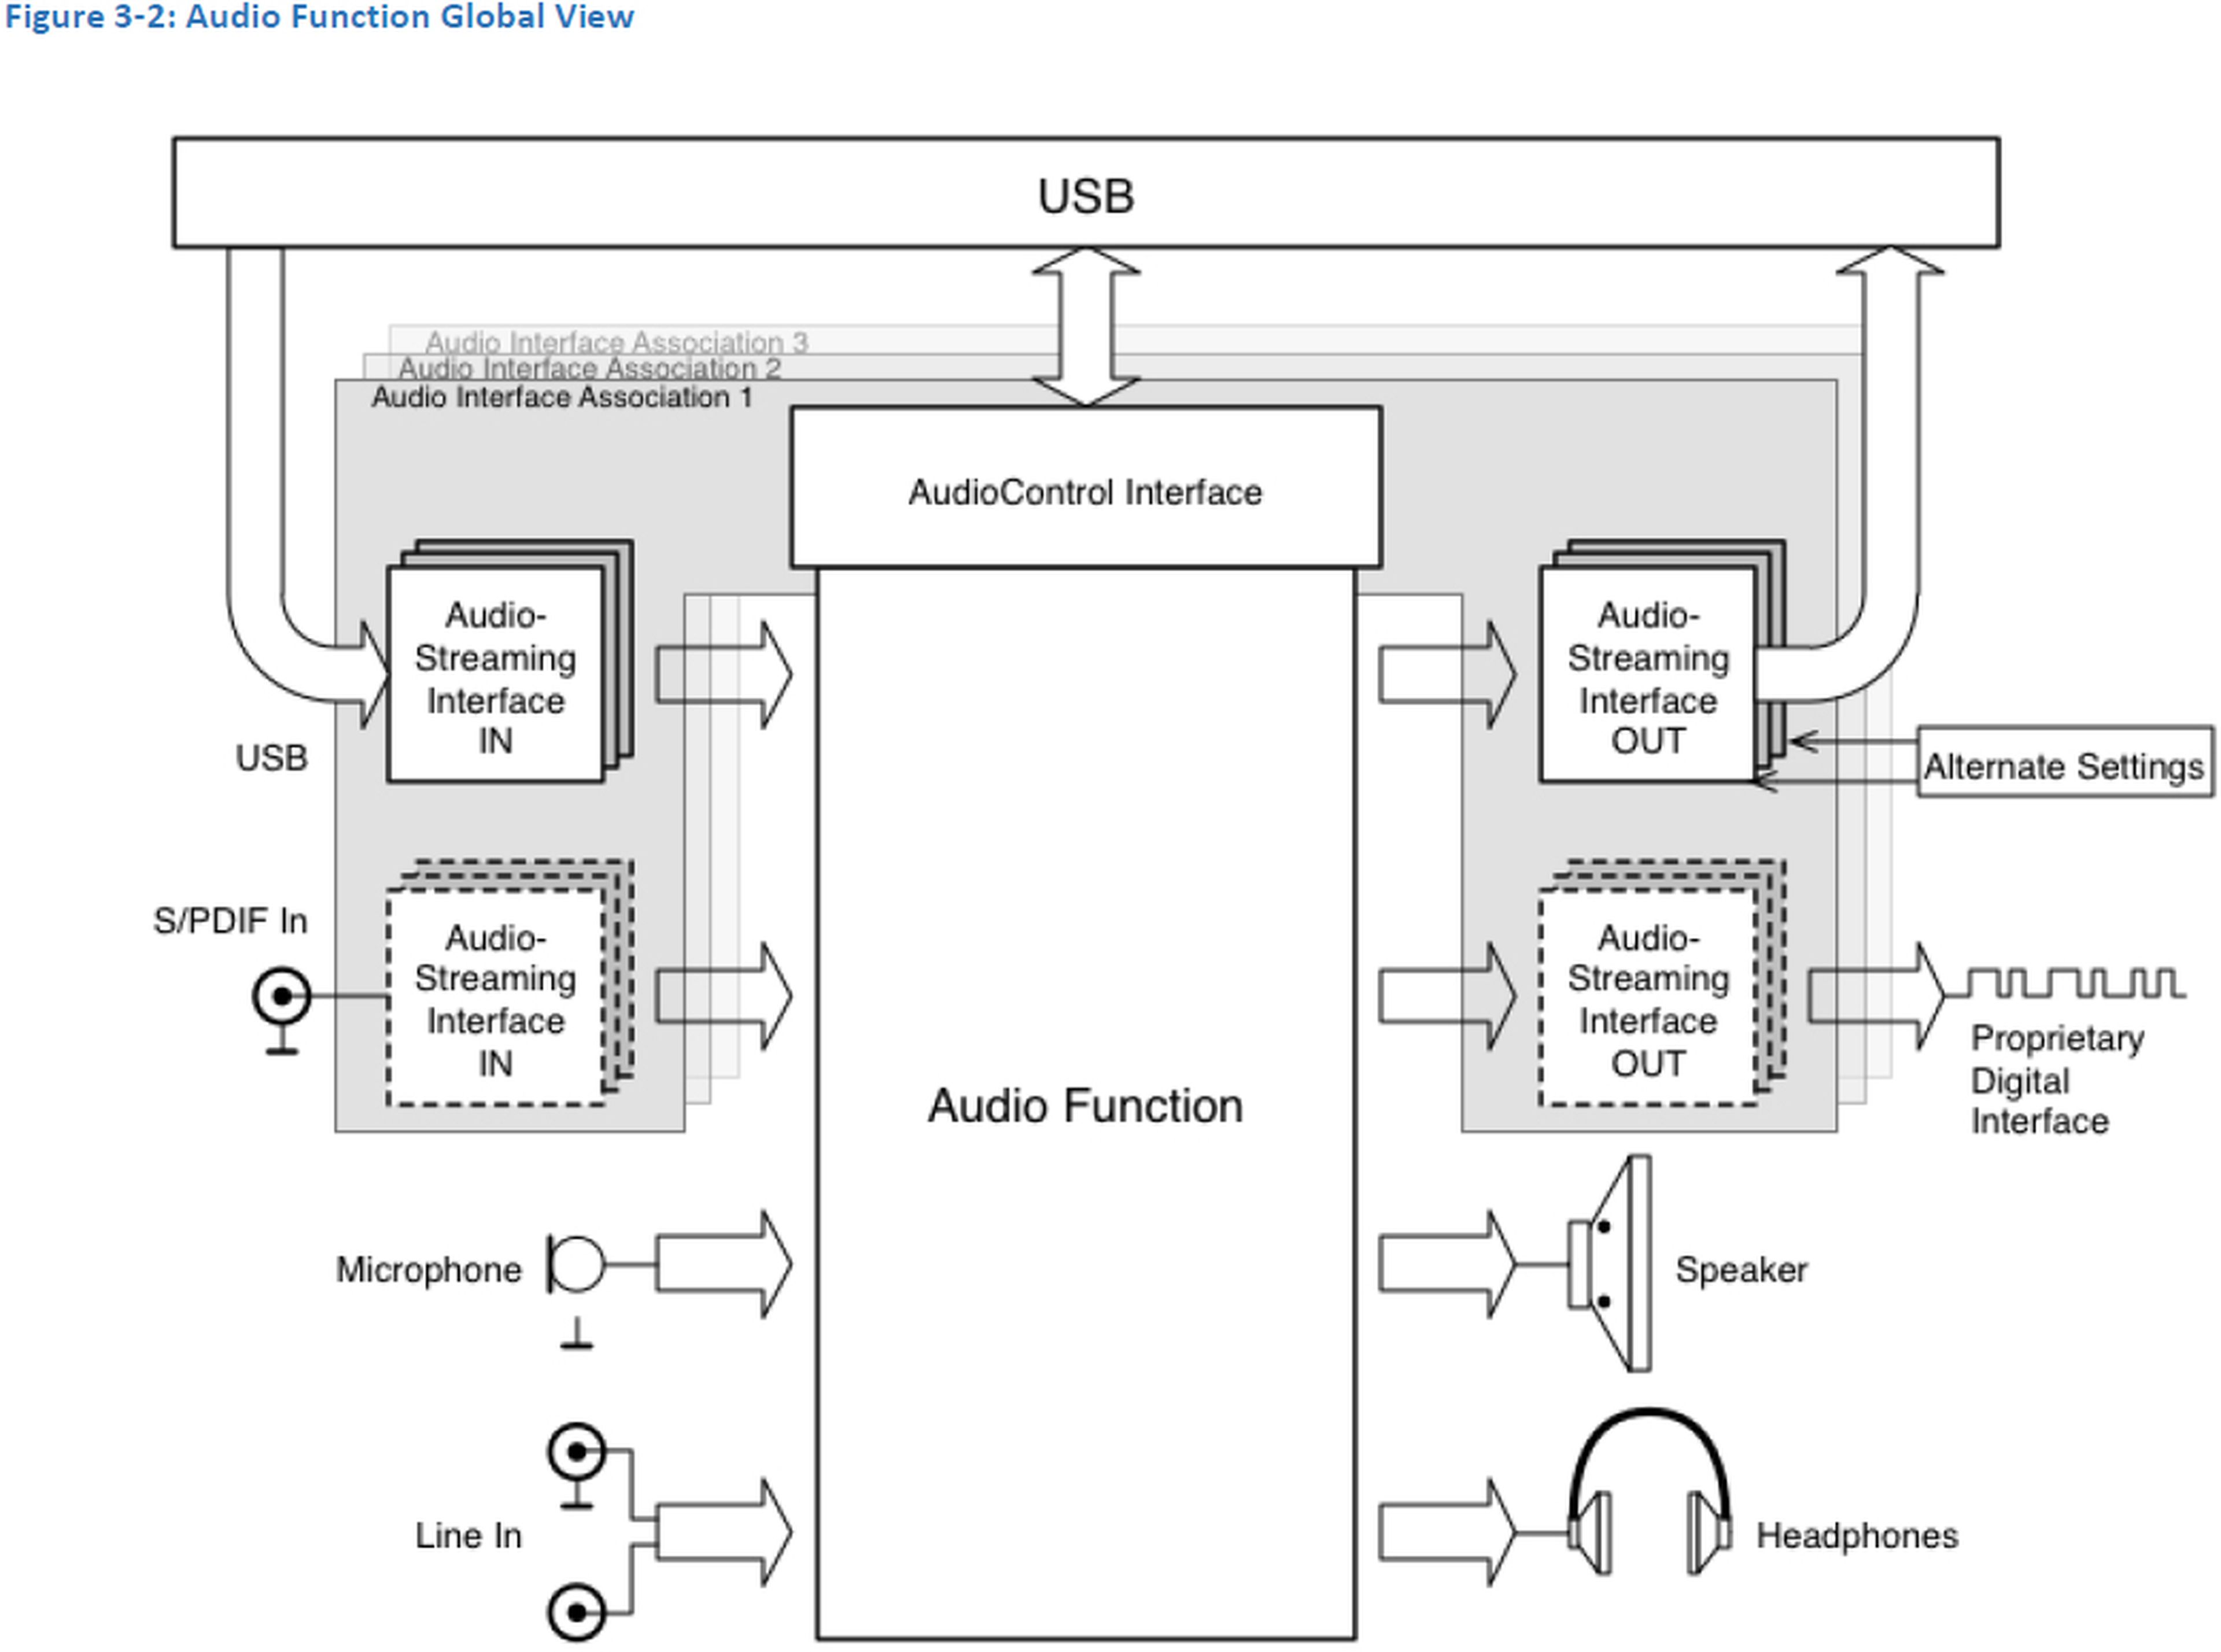 protocolo USB ADC 3.0